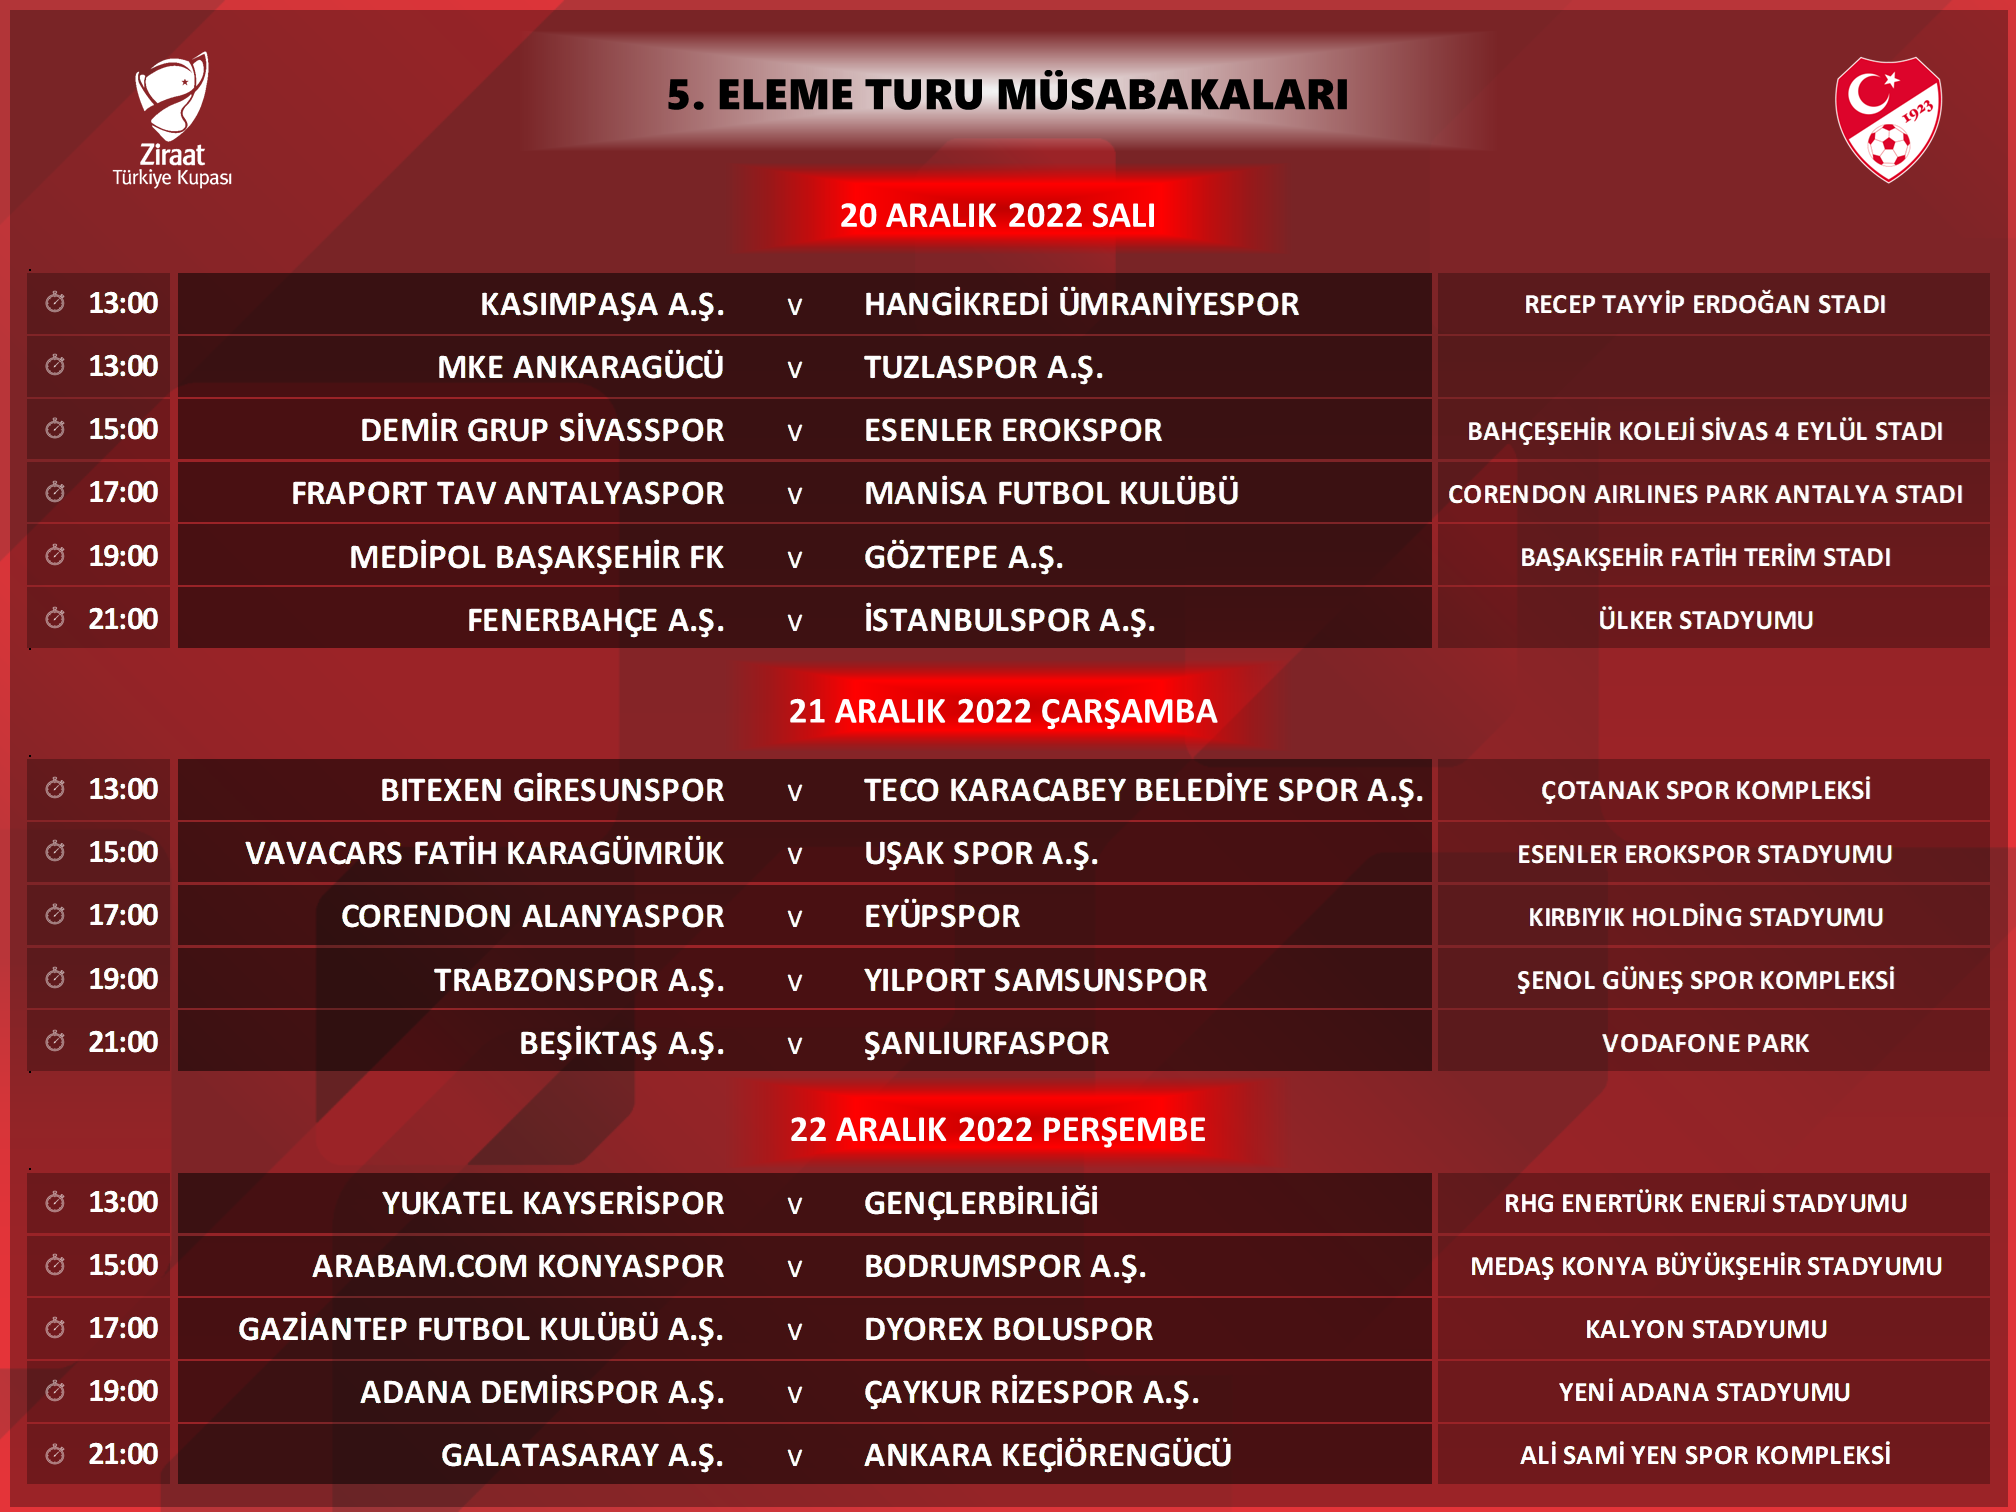 Türkiye Kupası programı açıklandı! Trabzonspor-Samsunspor maçının günü ve saati